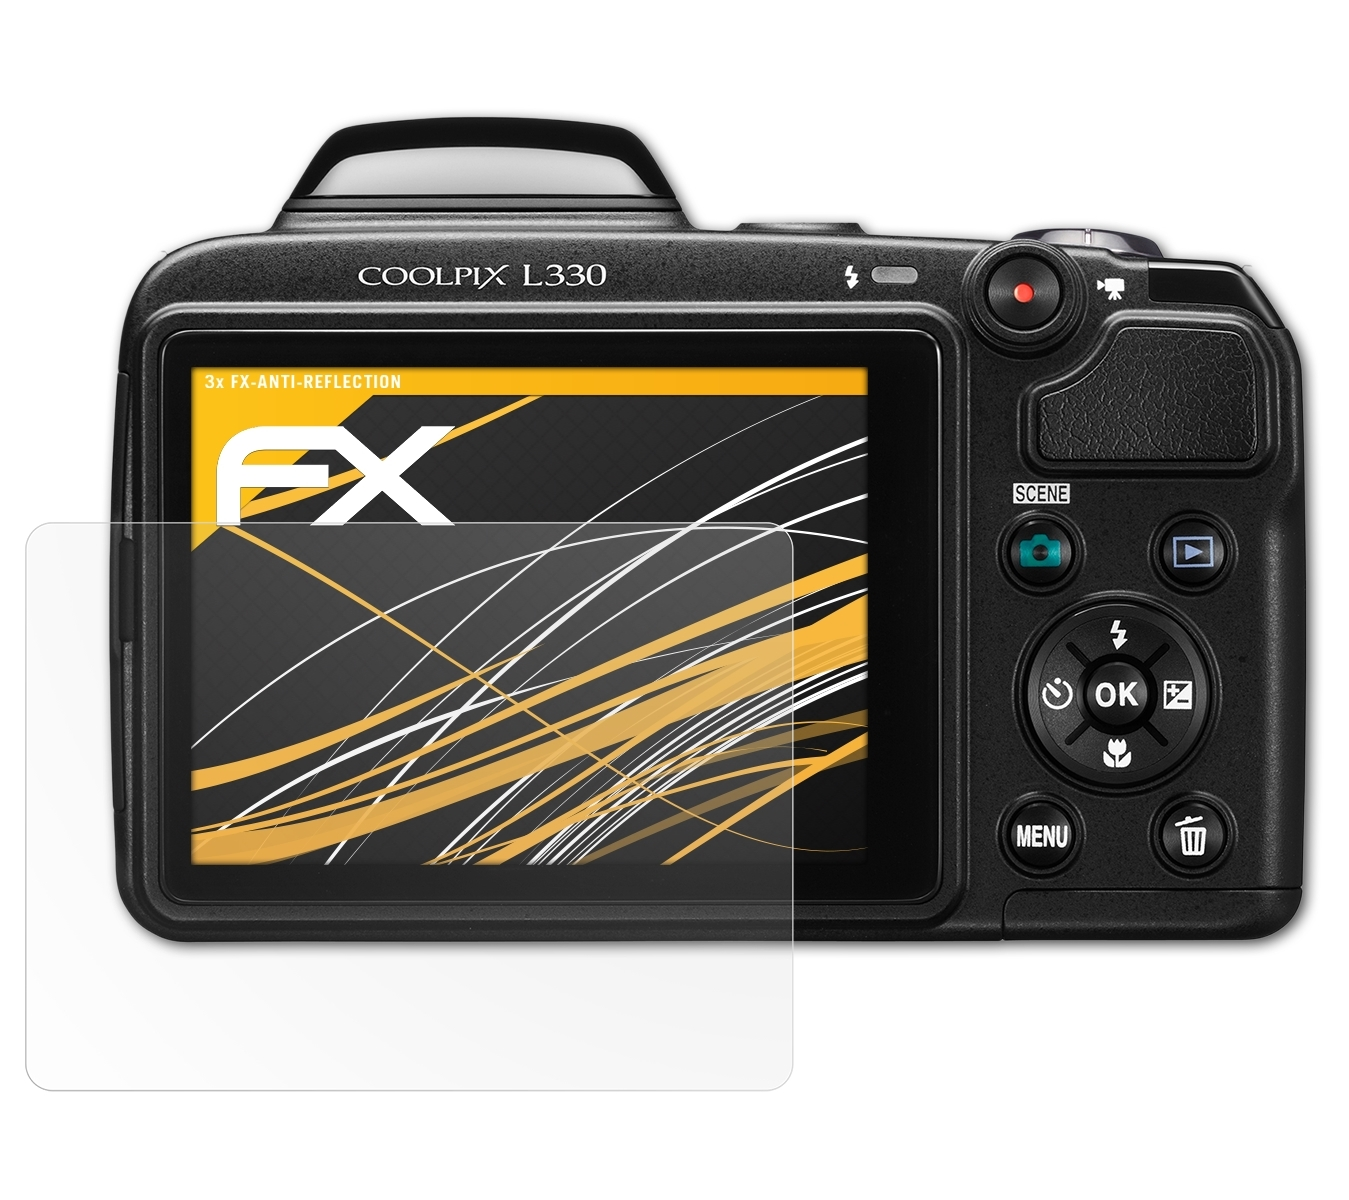 ATFOLIX FX-Antireflex Displayschutz(für Coolpix Nikon 3x L330)